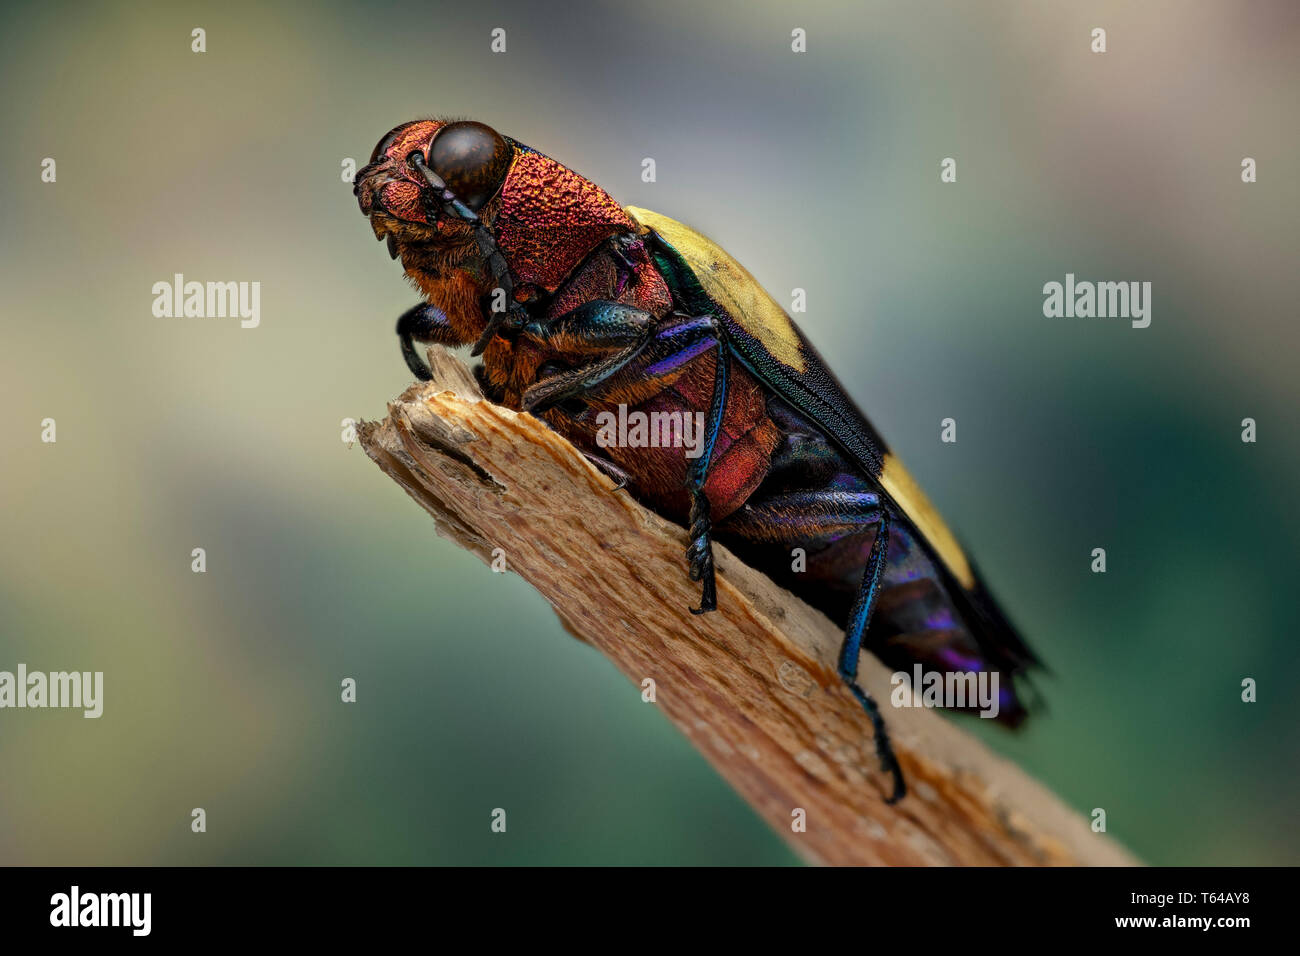 Buprestidae - jewel beetle Stock Photo